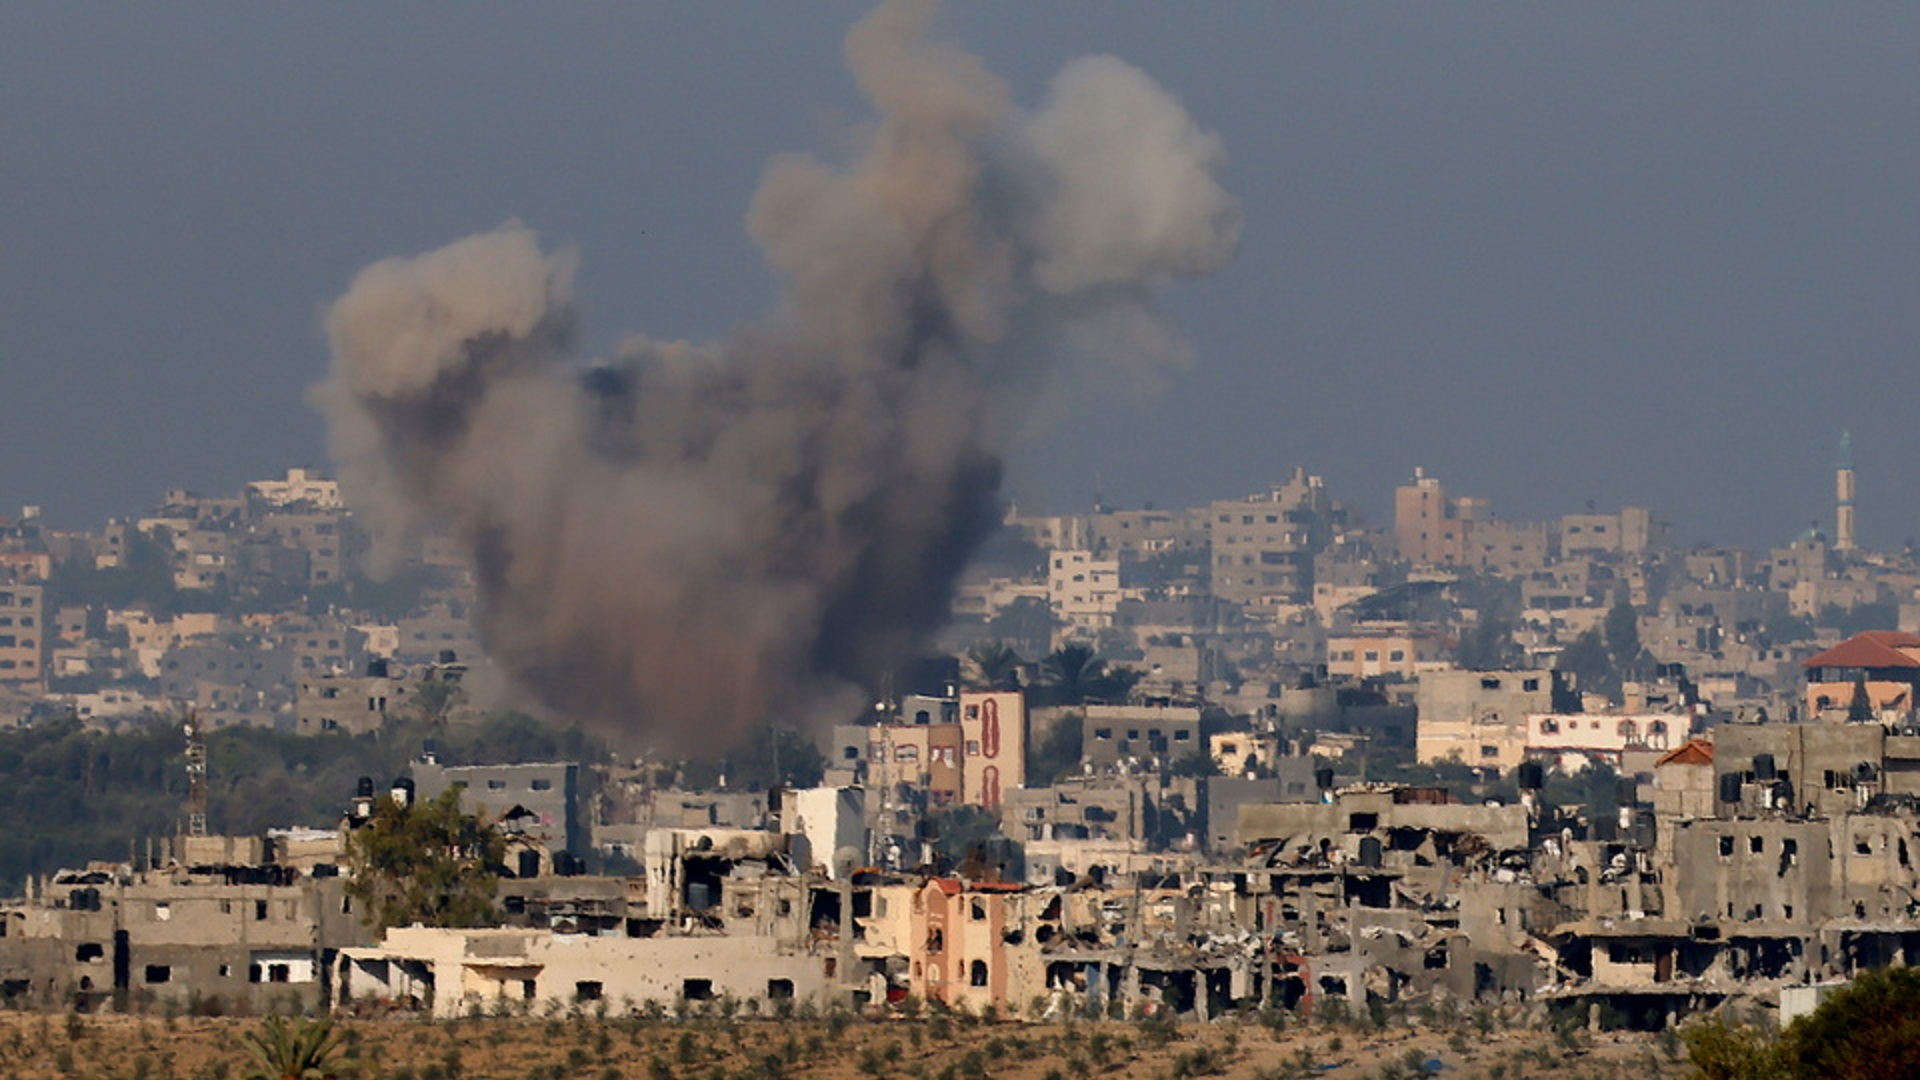 ΟΗΕ: Εγκρίθηκε ψήφισμα για εκεχειρία στη Λωρίδα της Γάζας – Το καταψήφισαν ΗΠΑ και Ισραήλ